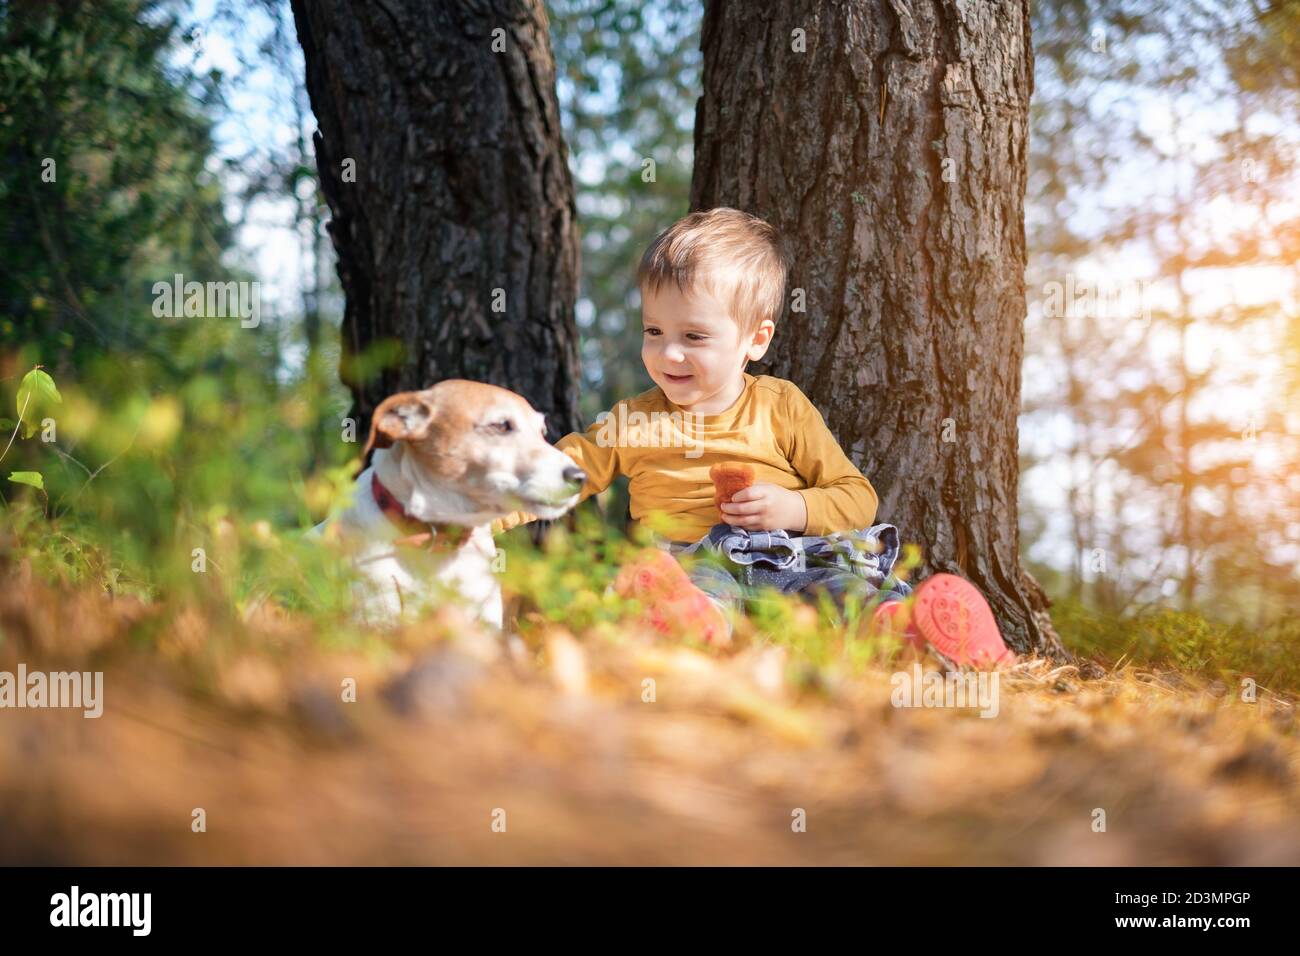 Kleines Kind in gelben Pullover mit weißen Hund Welpen Rasse Jack russel Terrier im Herbst Wald. Kindheit mit Haustieren Konzept Stockfoto